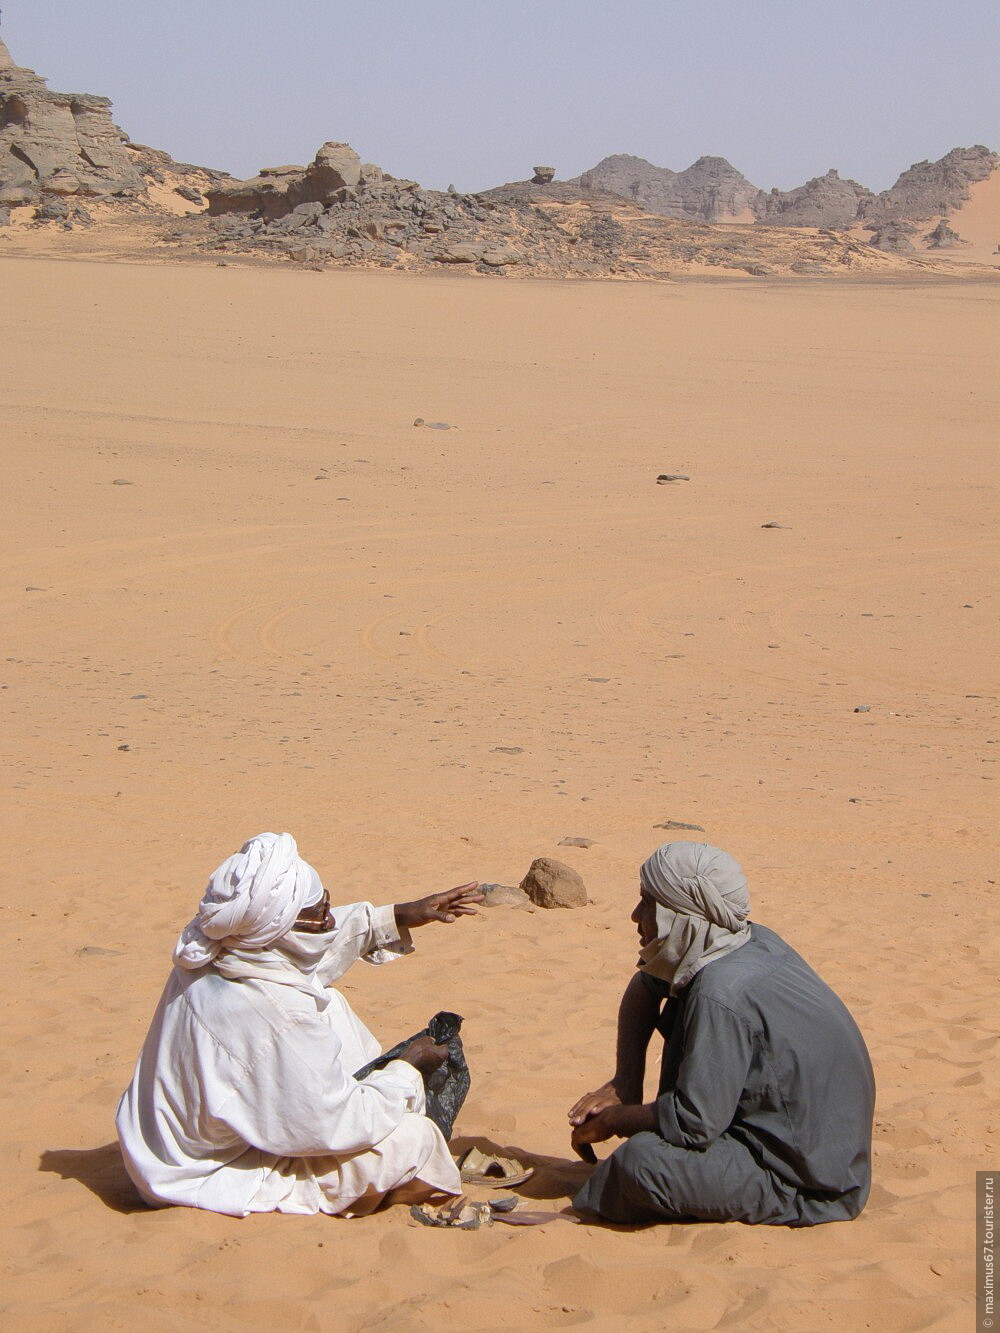 Жизнь и быт в пустыне. Бедуины Аравийского полуострова. Араб в пустыне. Бедуины в пустыне. Арабы бедуины.